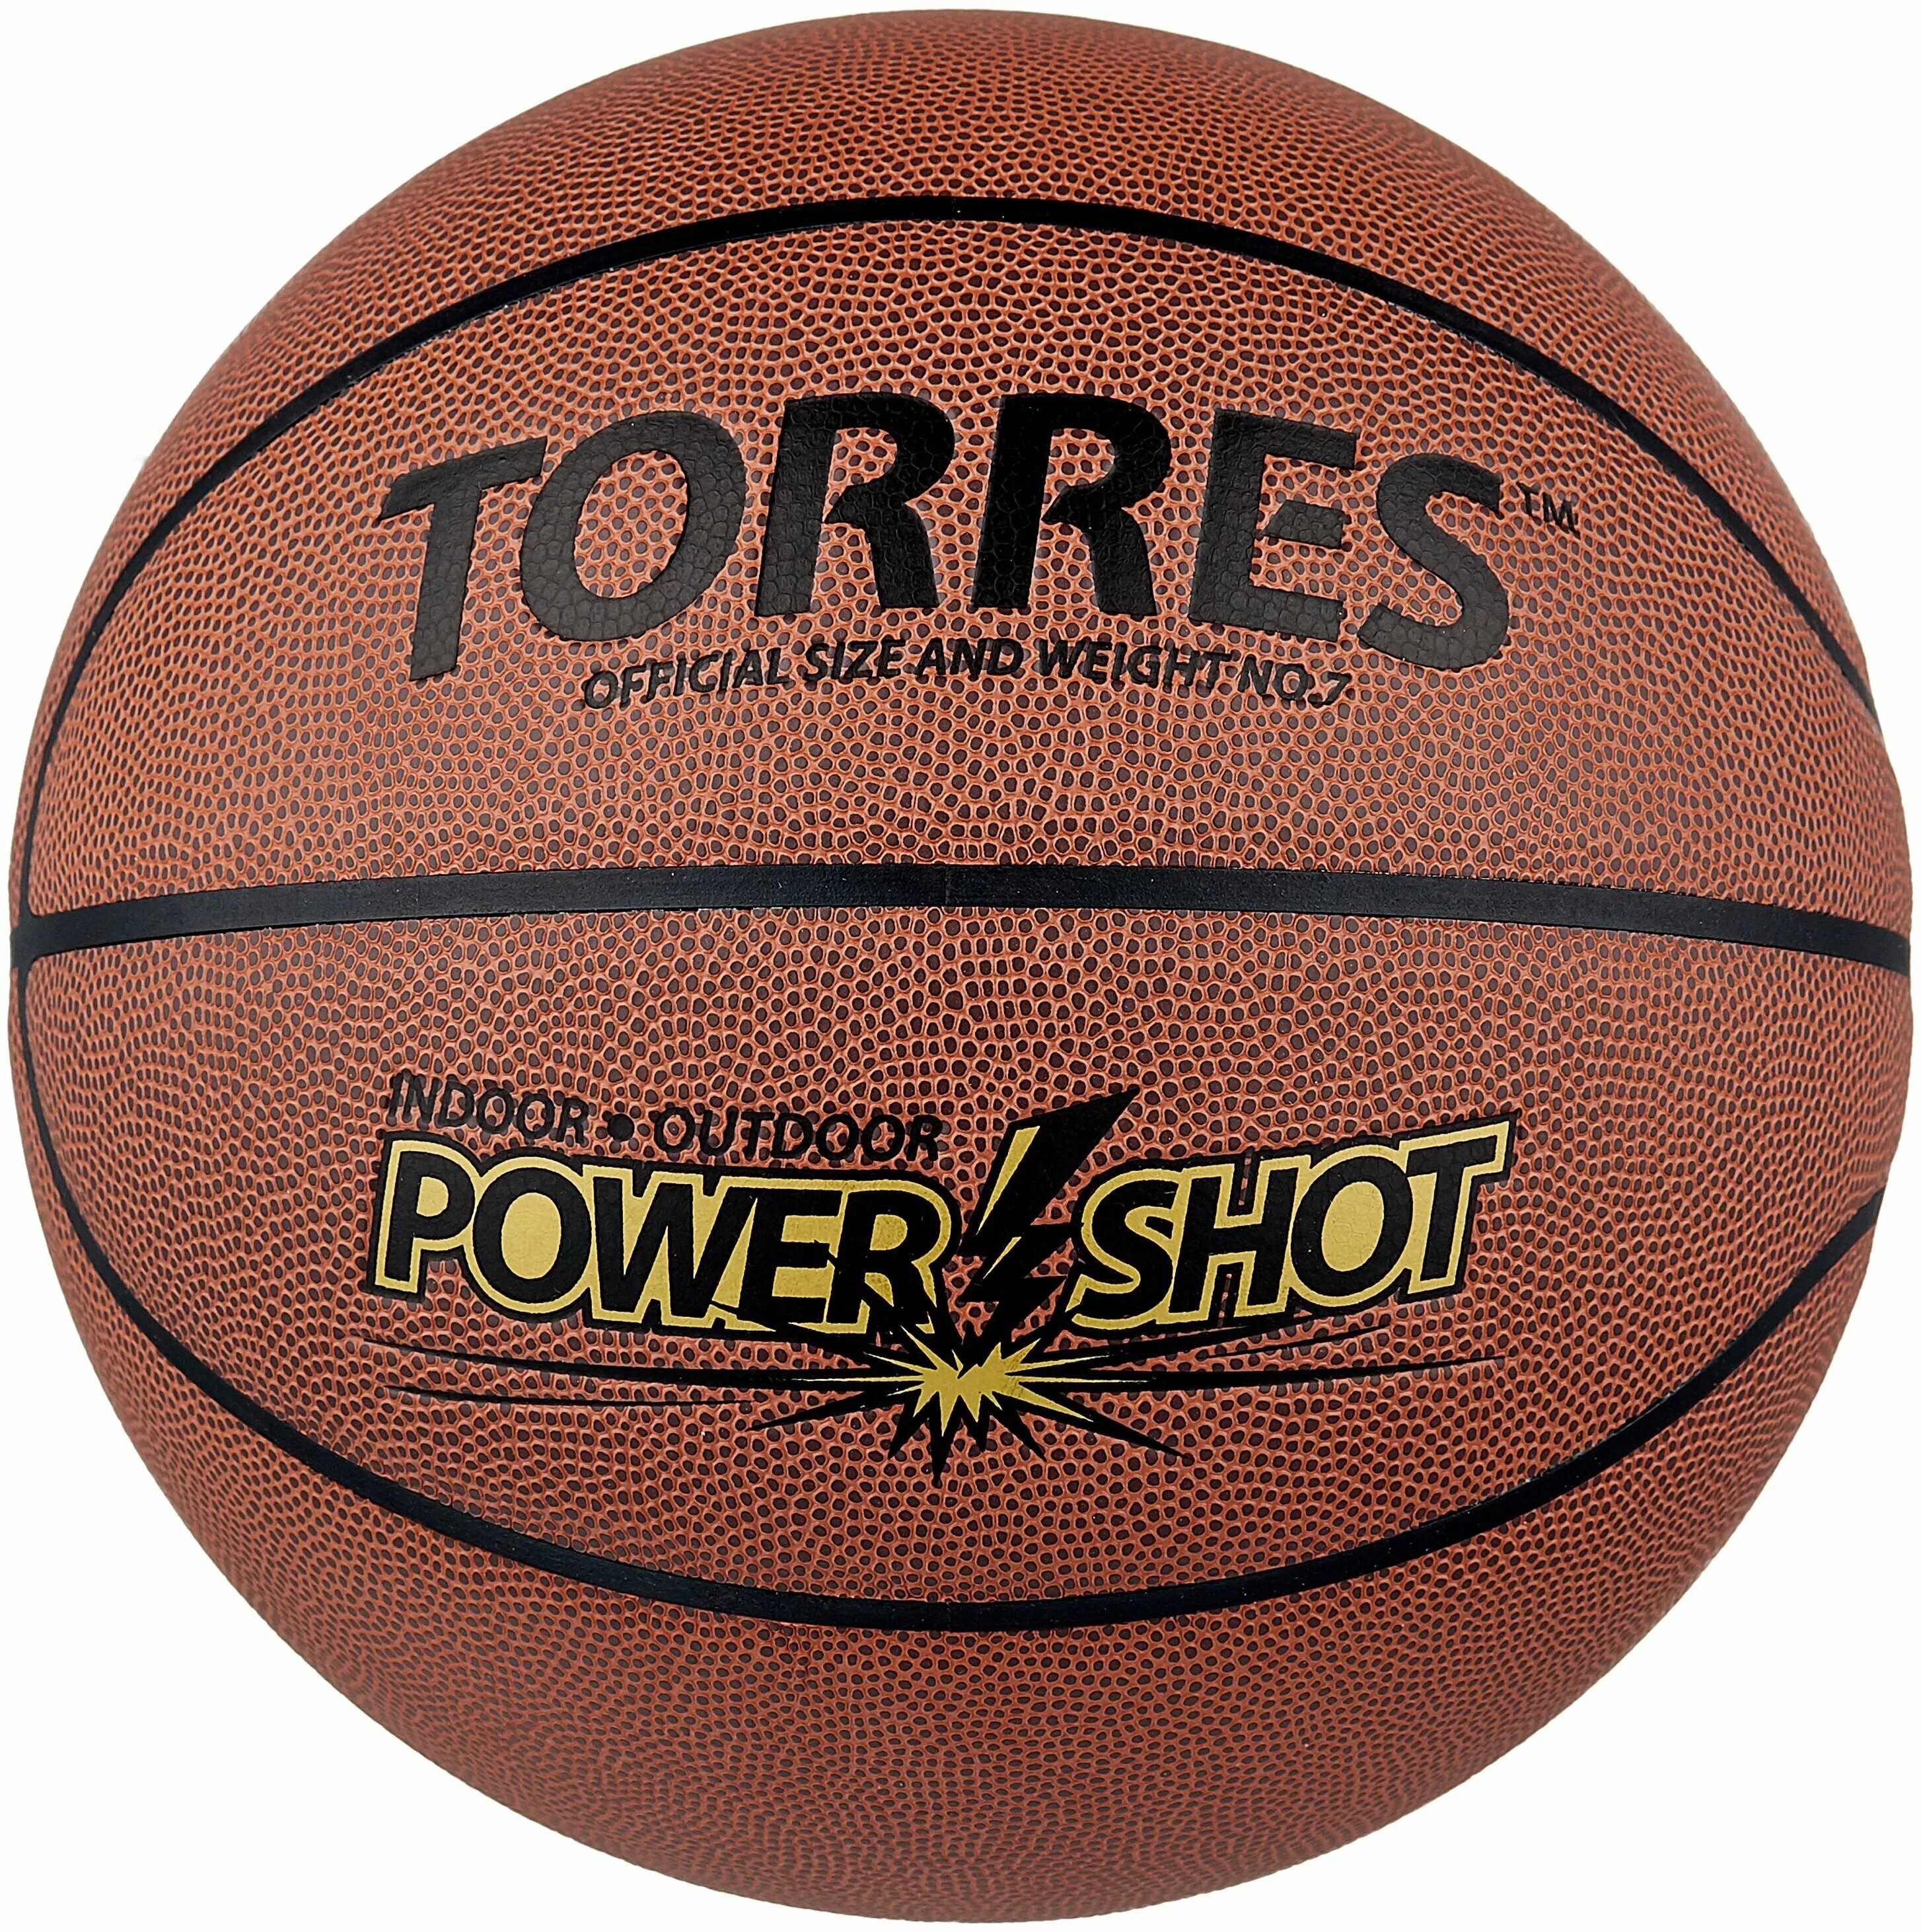 Баскетбольный мяч Spalding NBA. Мяч баскетбольный Spalding TF-250 all Surf 74-531. Баскетбольный мяч Torres b30037, р. 7. Баскетбольный мяч Torres Power shot.